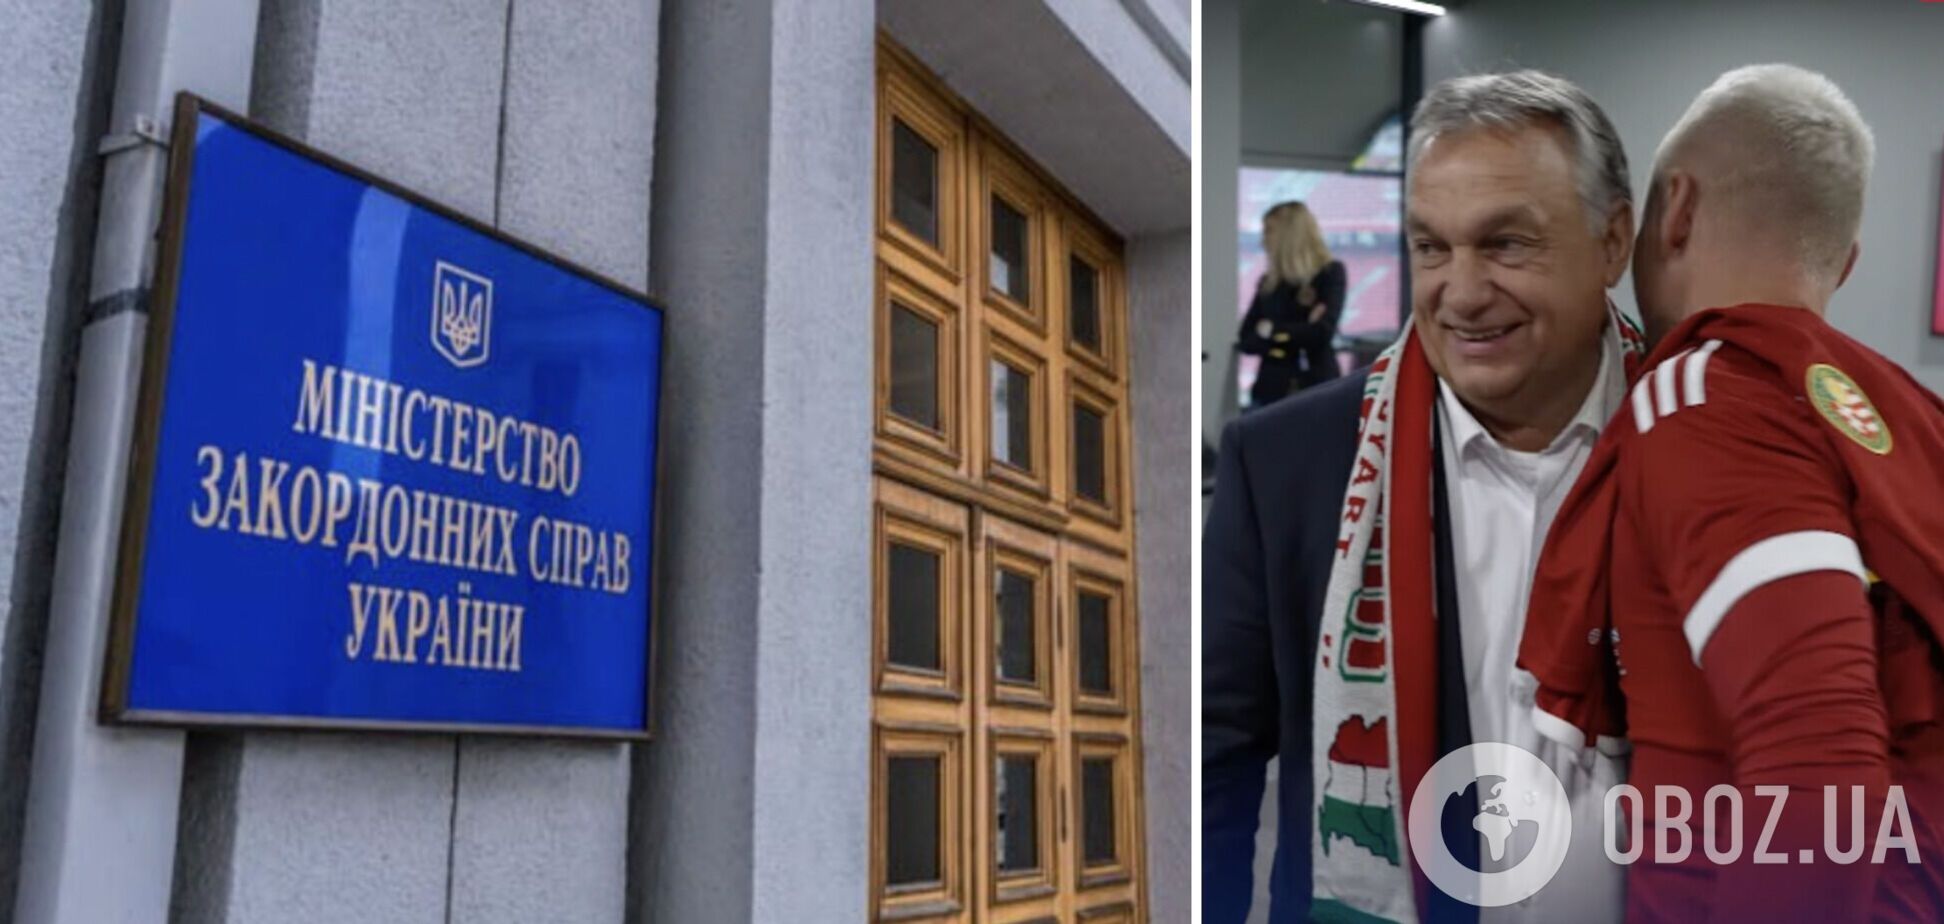 МИД Украины требует извинений от Орбана и вызывает посла Венгрии из-за скандала с посягательством на территорию других стран